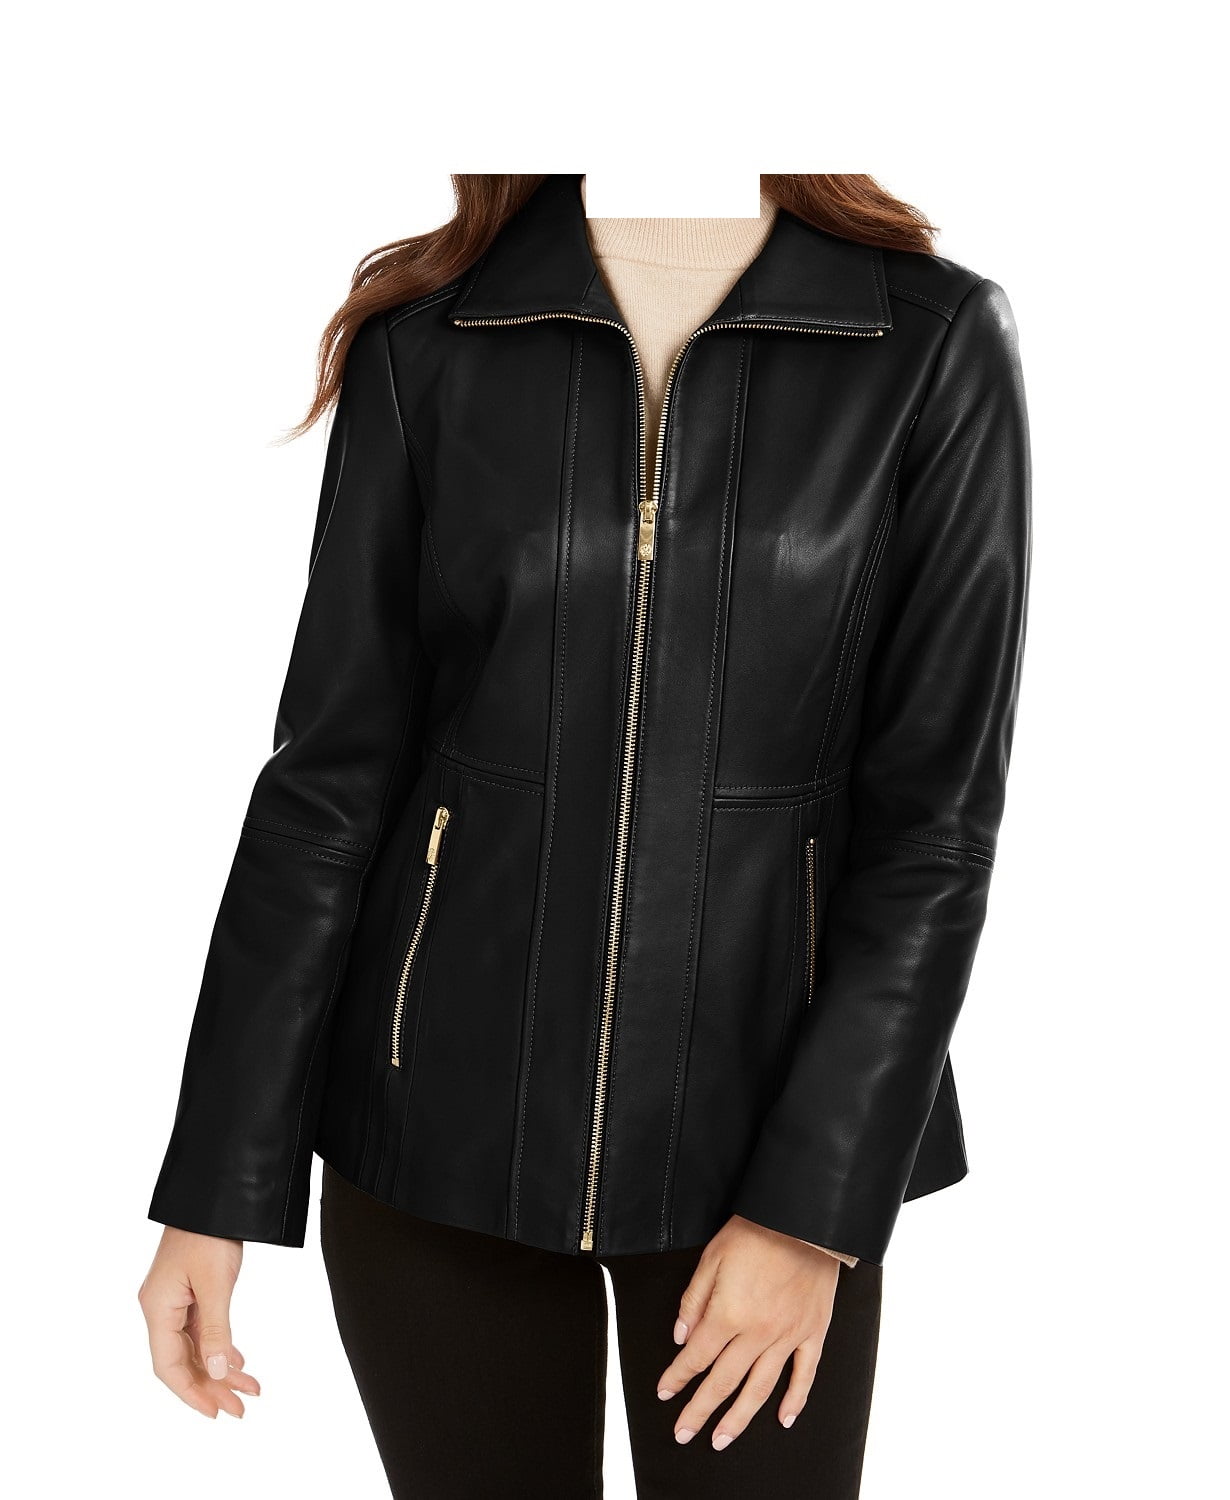 Anne Klein - Anne Klein Zip-Front Leather Jacket - Walmart.com